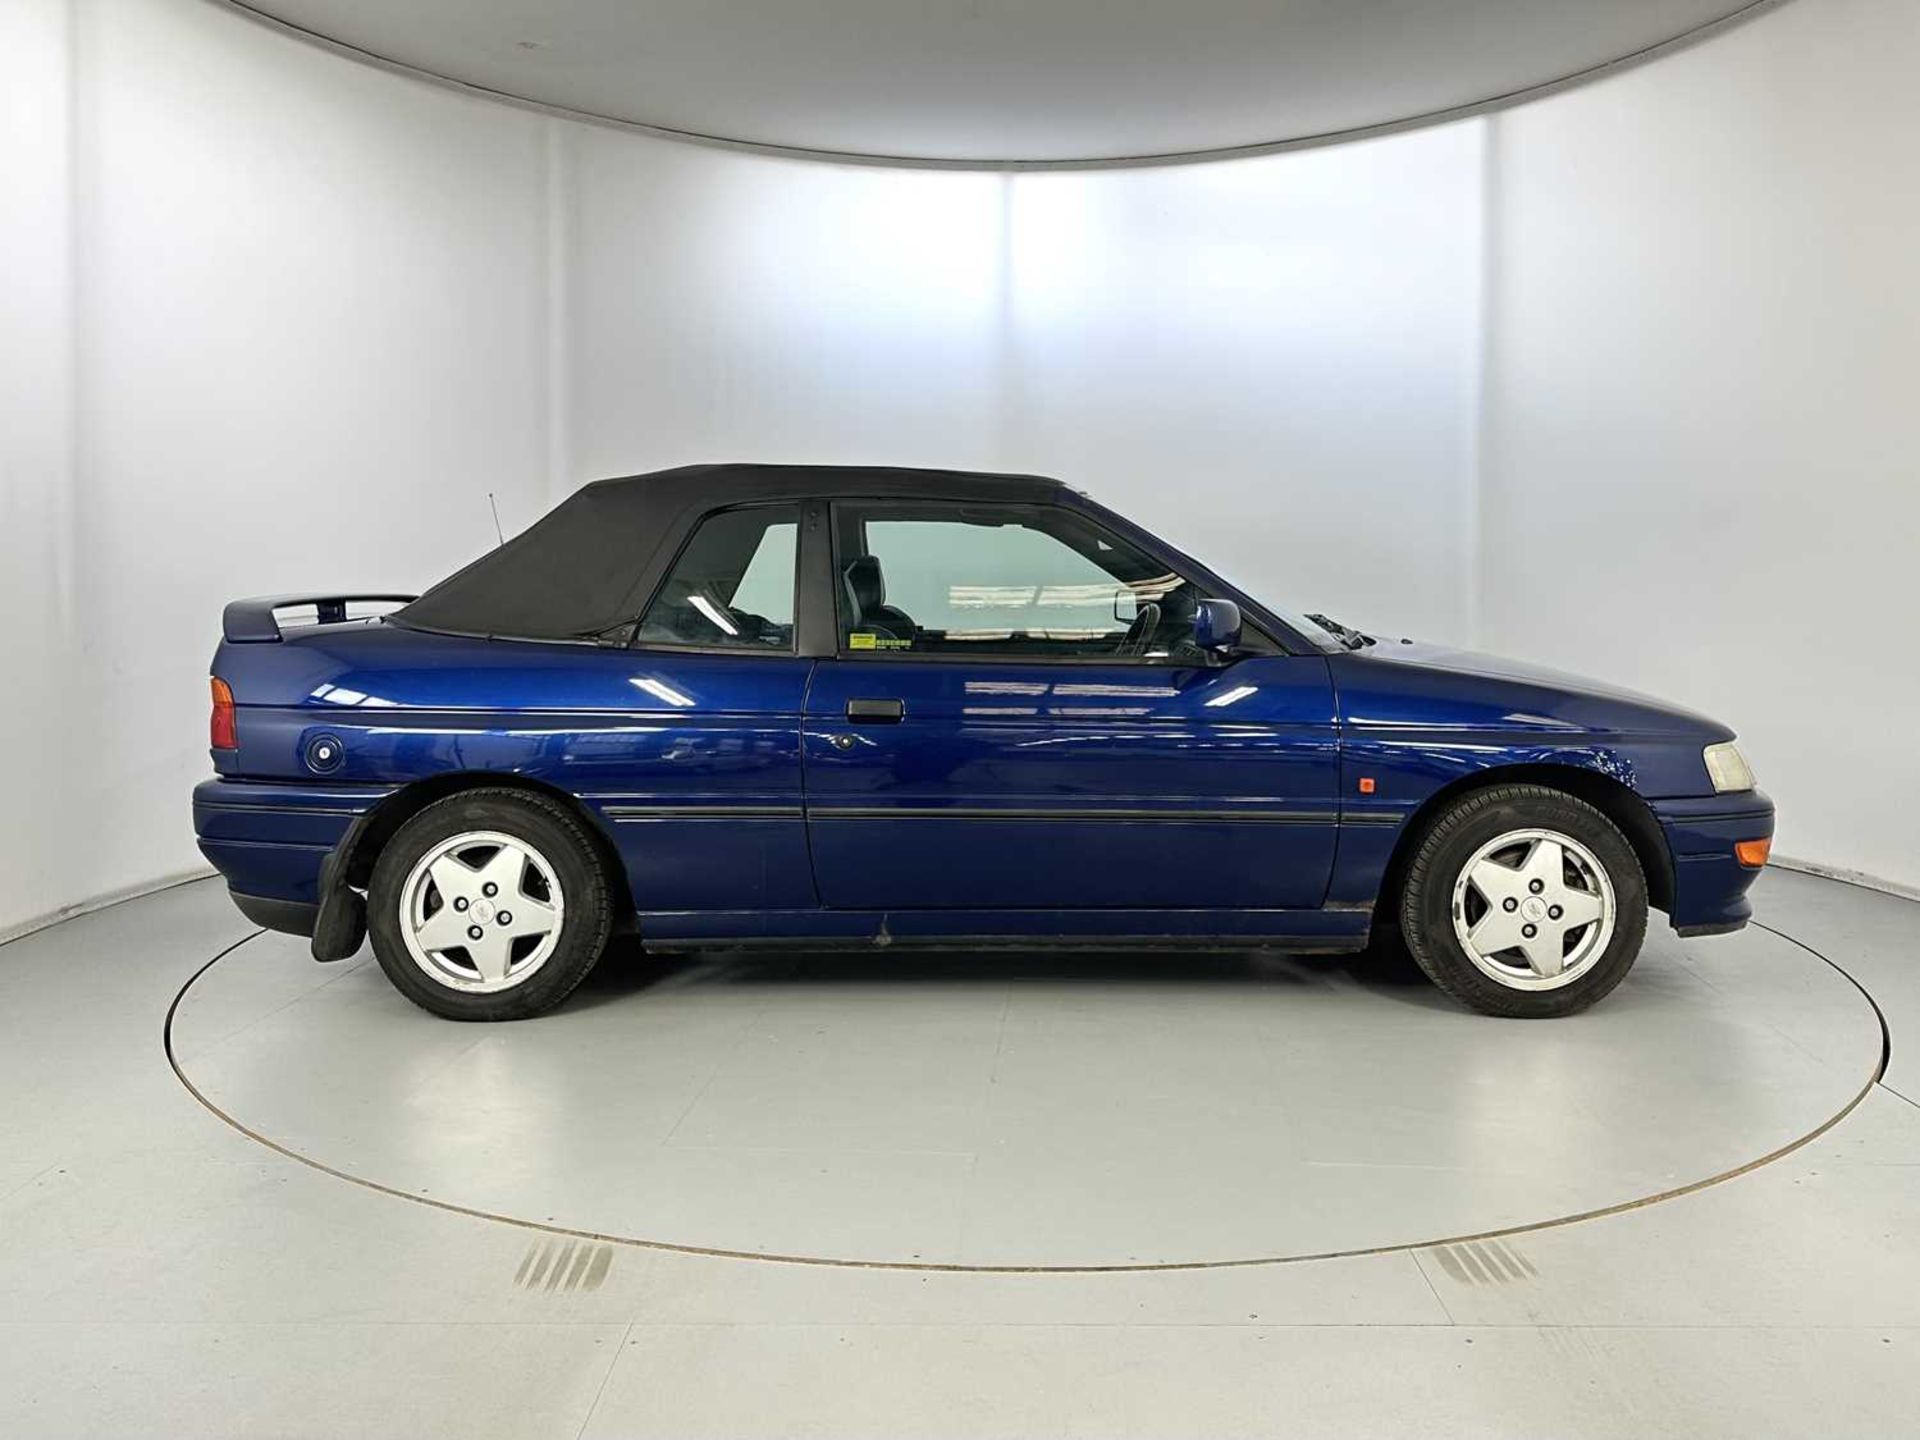 1993 Ford Escort XR3i Cabriolet - Image 11 of 30